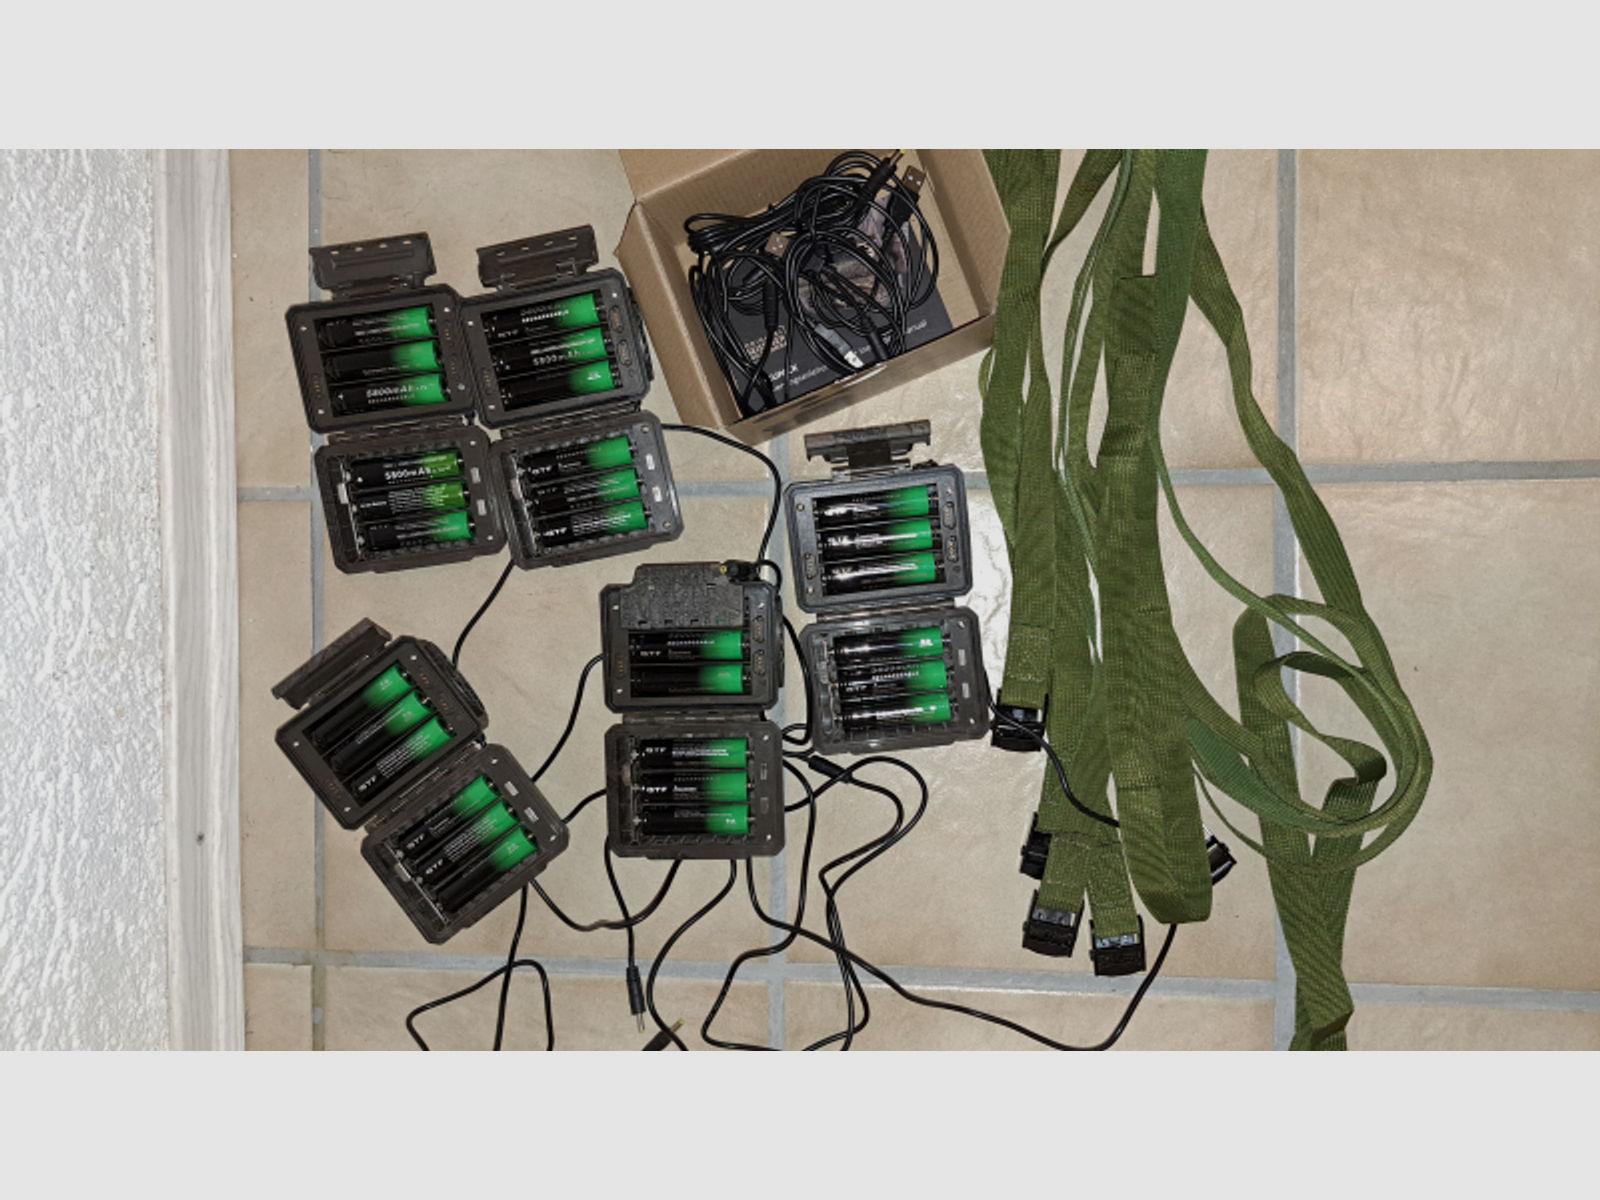 Externer Akkupack für Seissiger Wildkameras inkl. Akkus 18650,Baumgurt und USB-Kabel